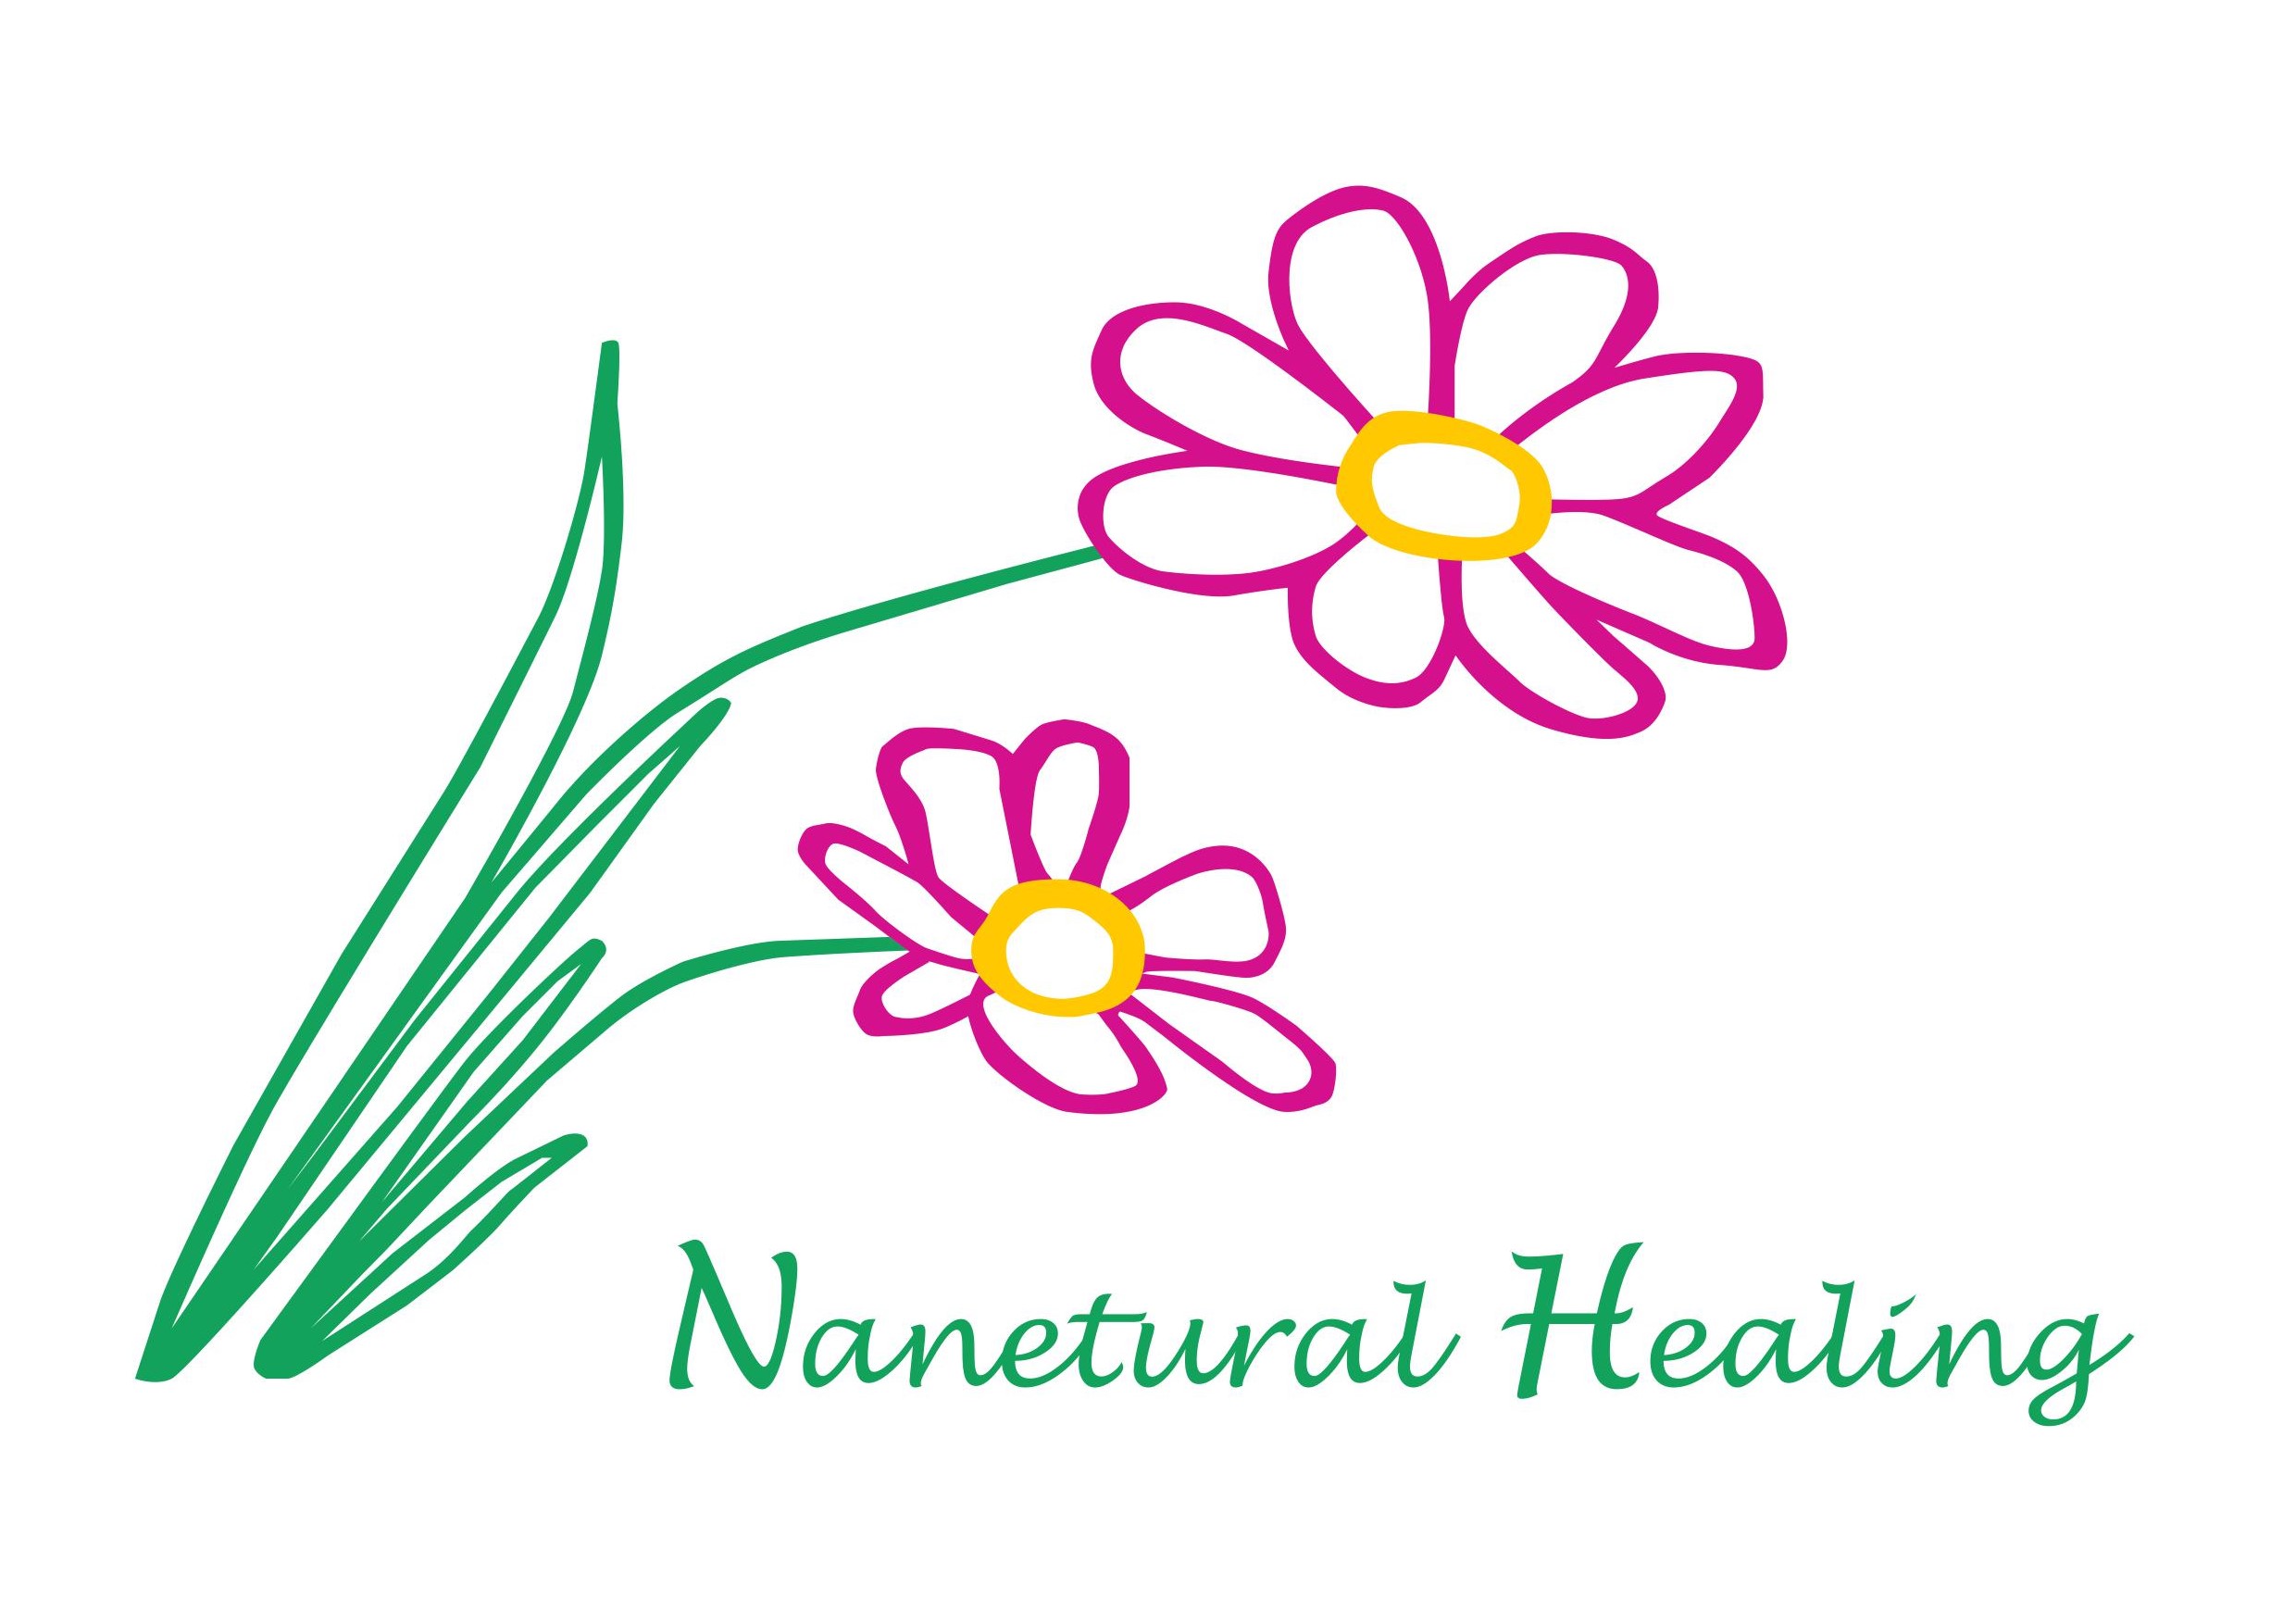 Nanetural Healing